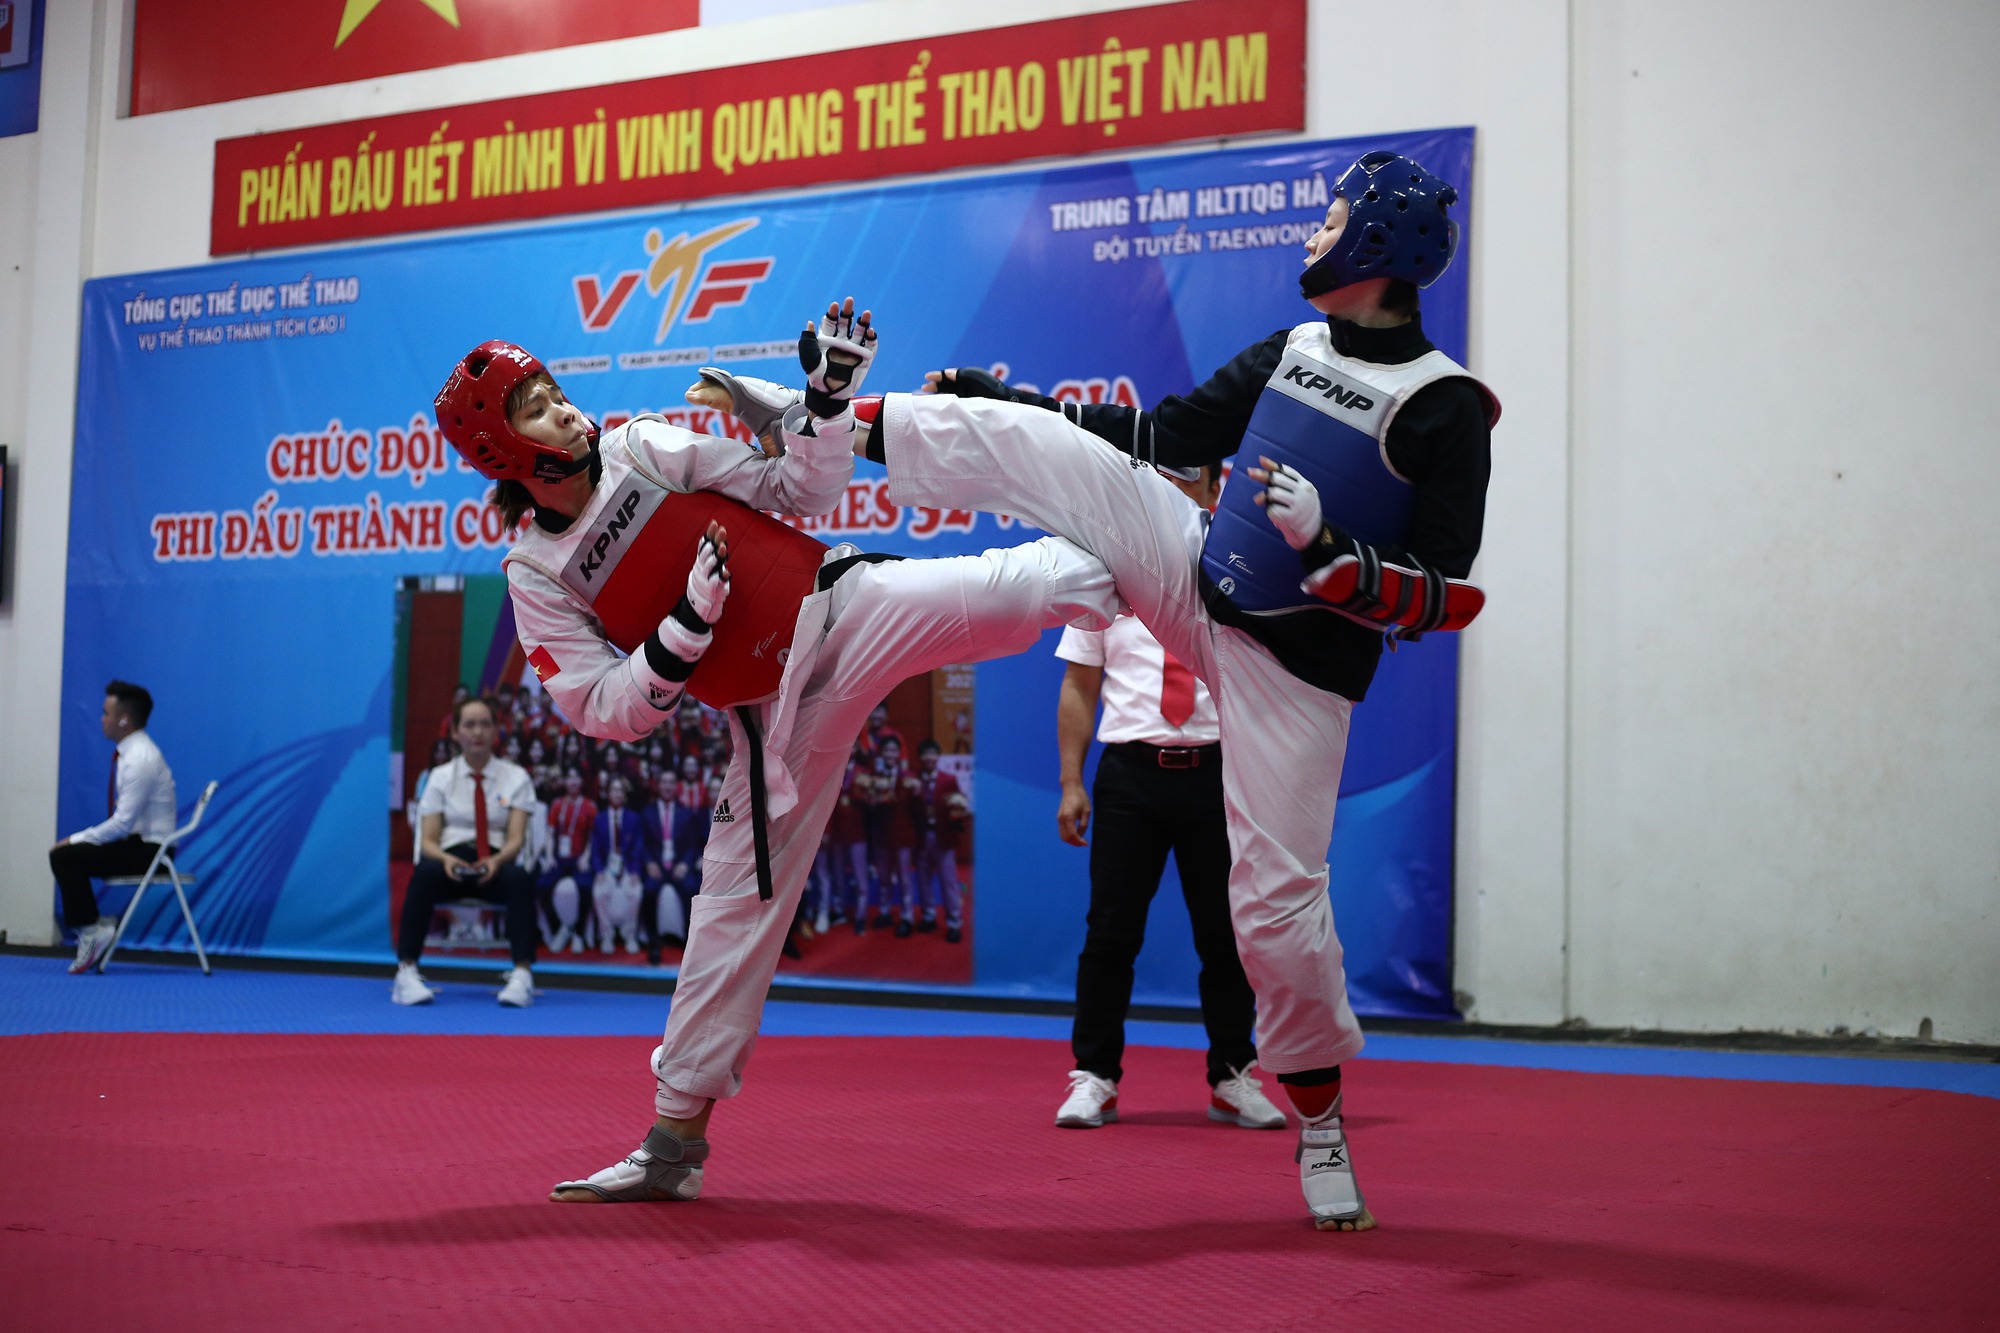 Taekwondo Võ Karate Dây Nịt - Ảnh miễn phí trên Pixabay - Pixabay